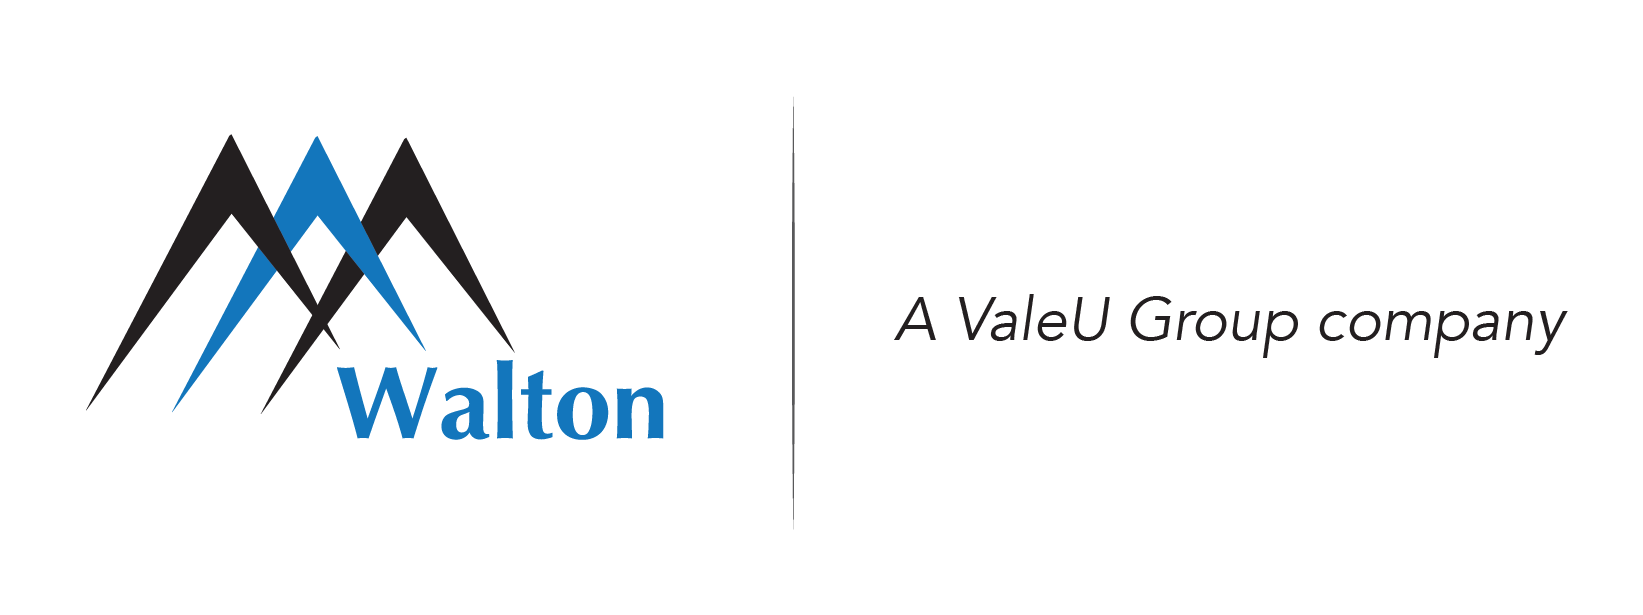 Walton VG Logo